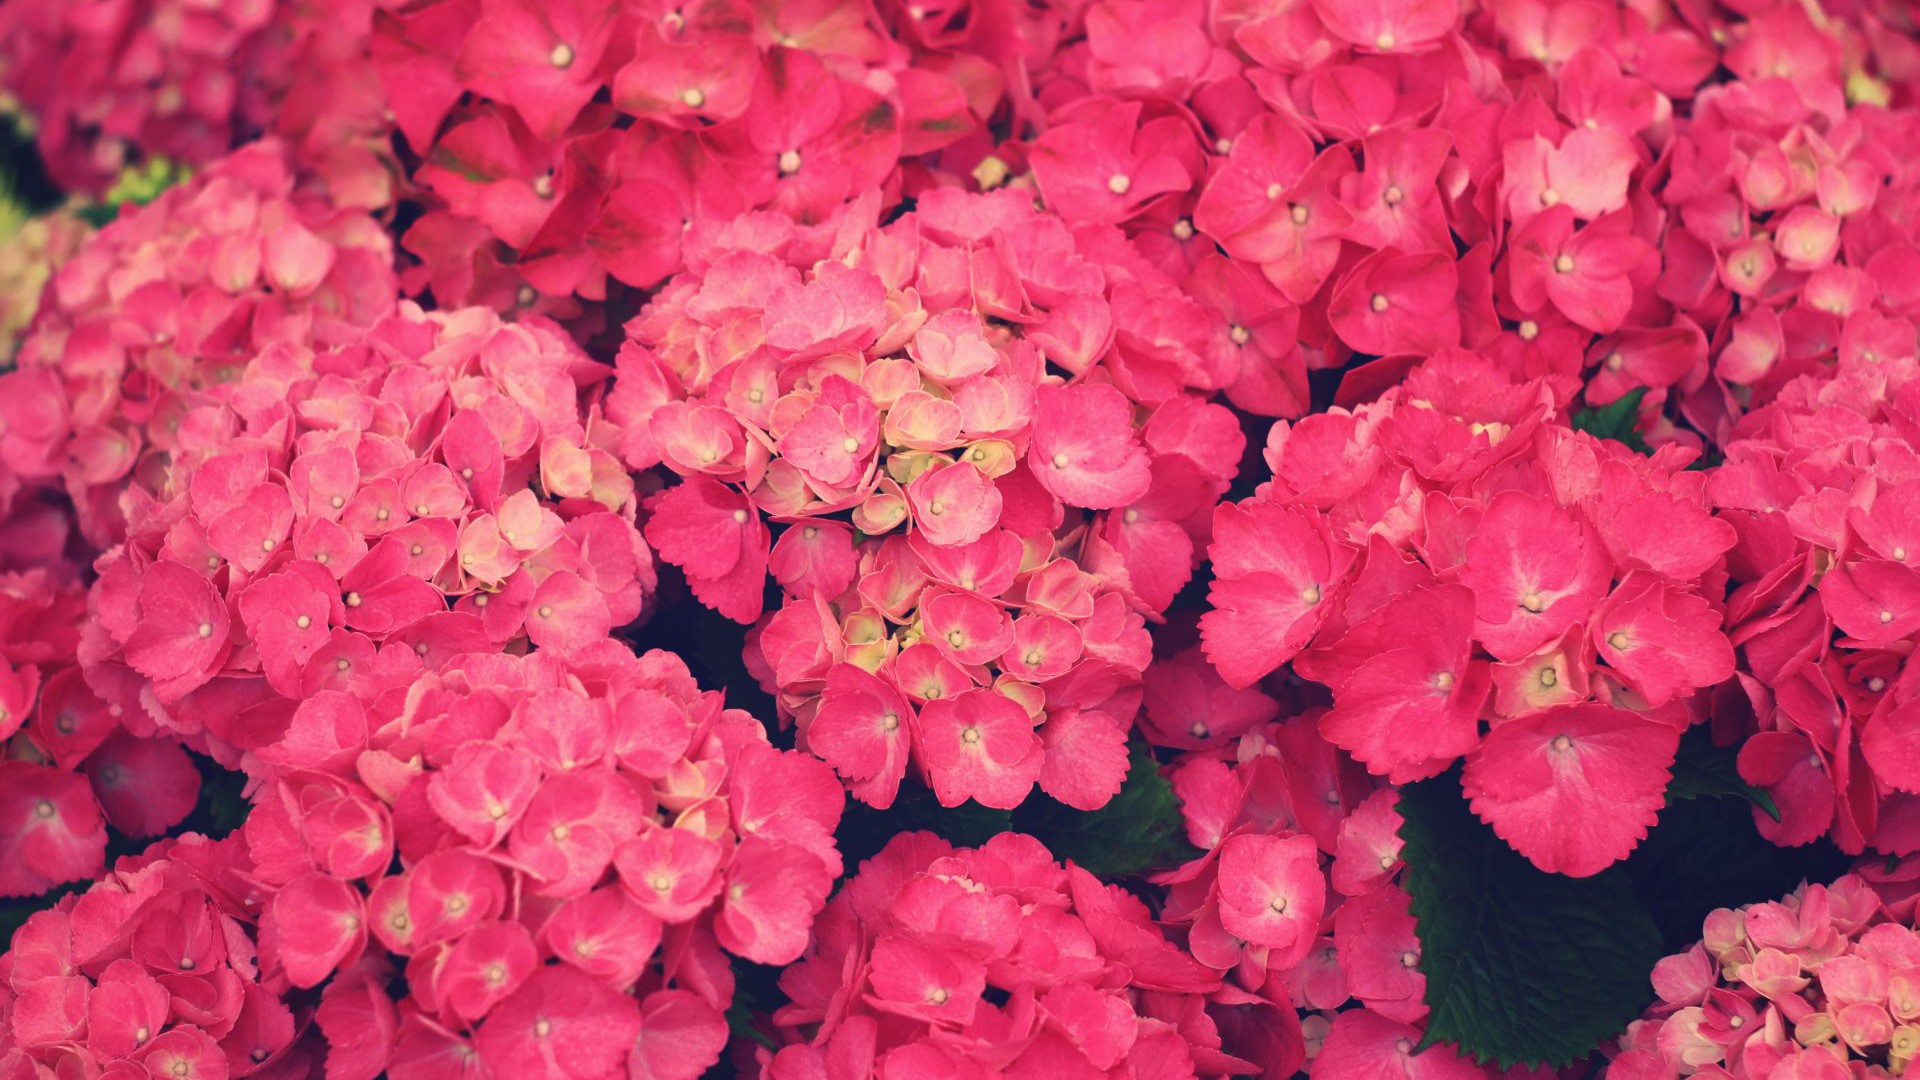 Pink Flowers 19308 1920x1080 px ~ HDWallSource.com